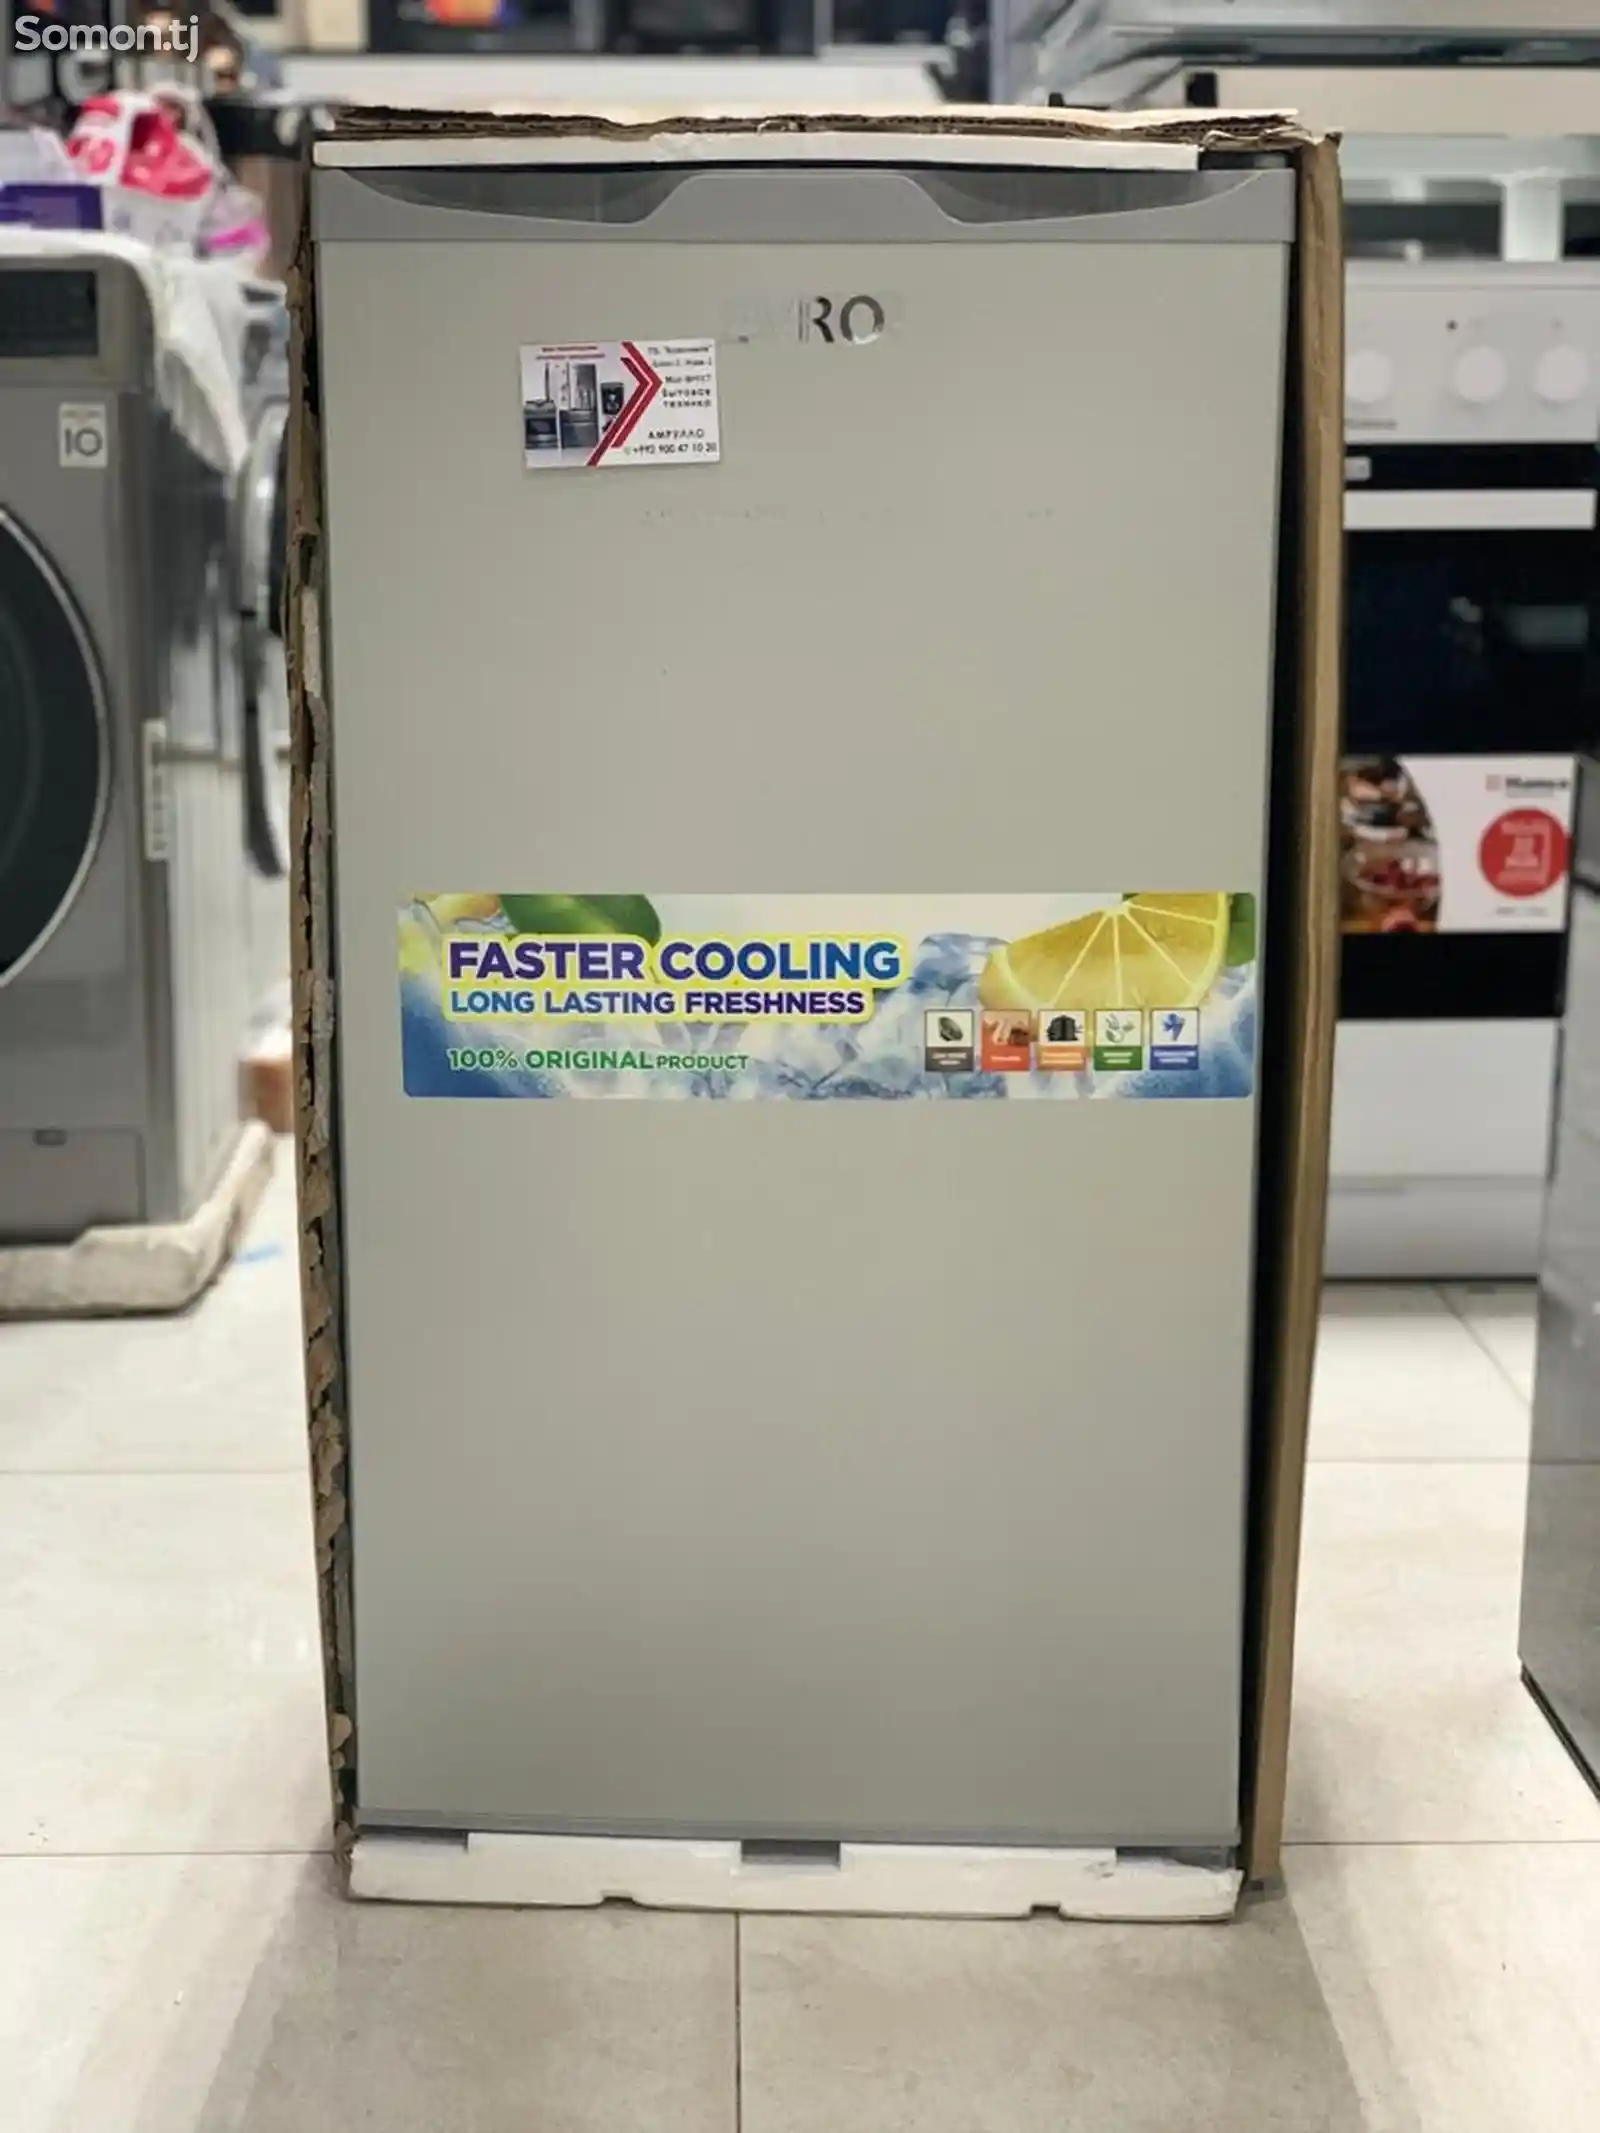 Холодильники Evro-1